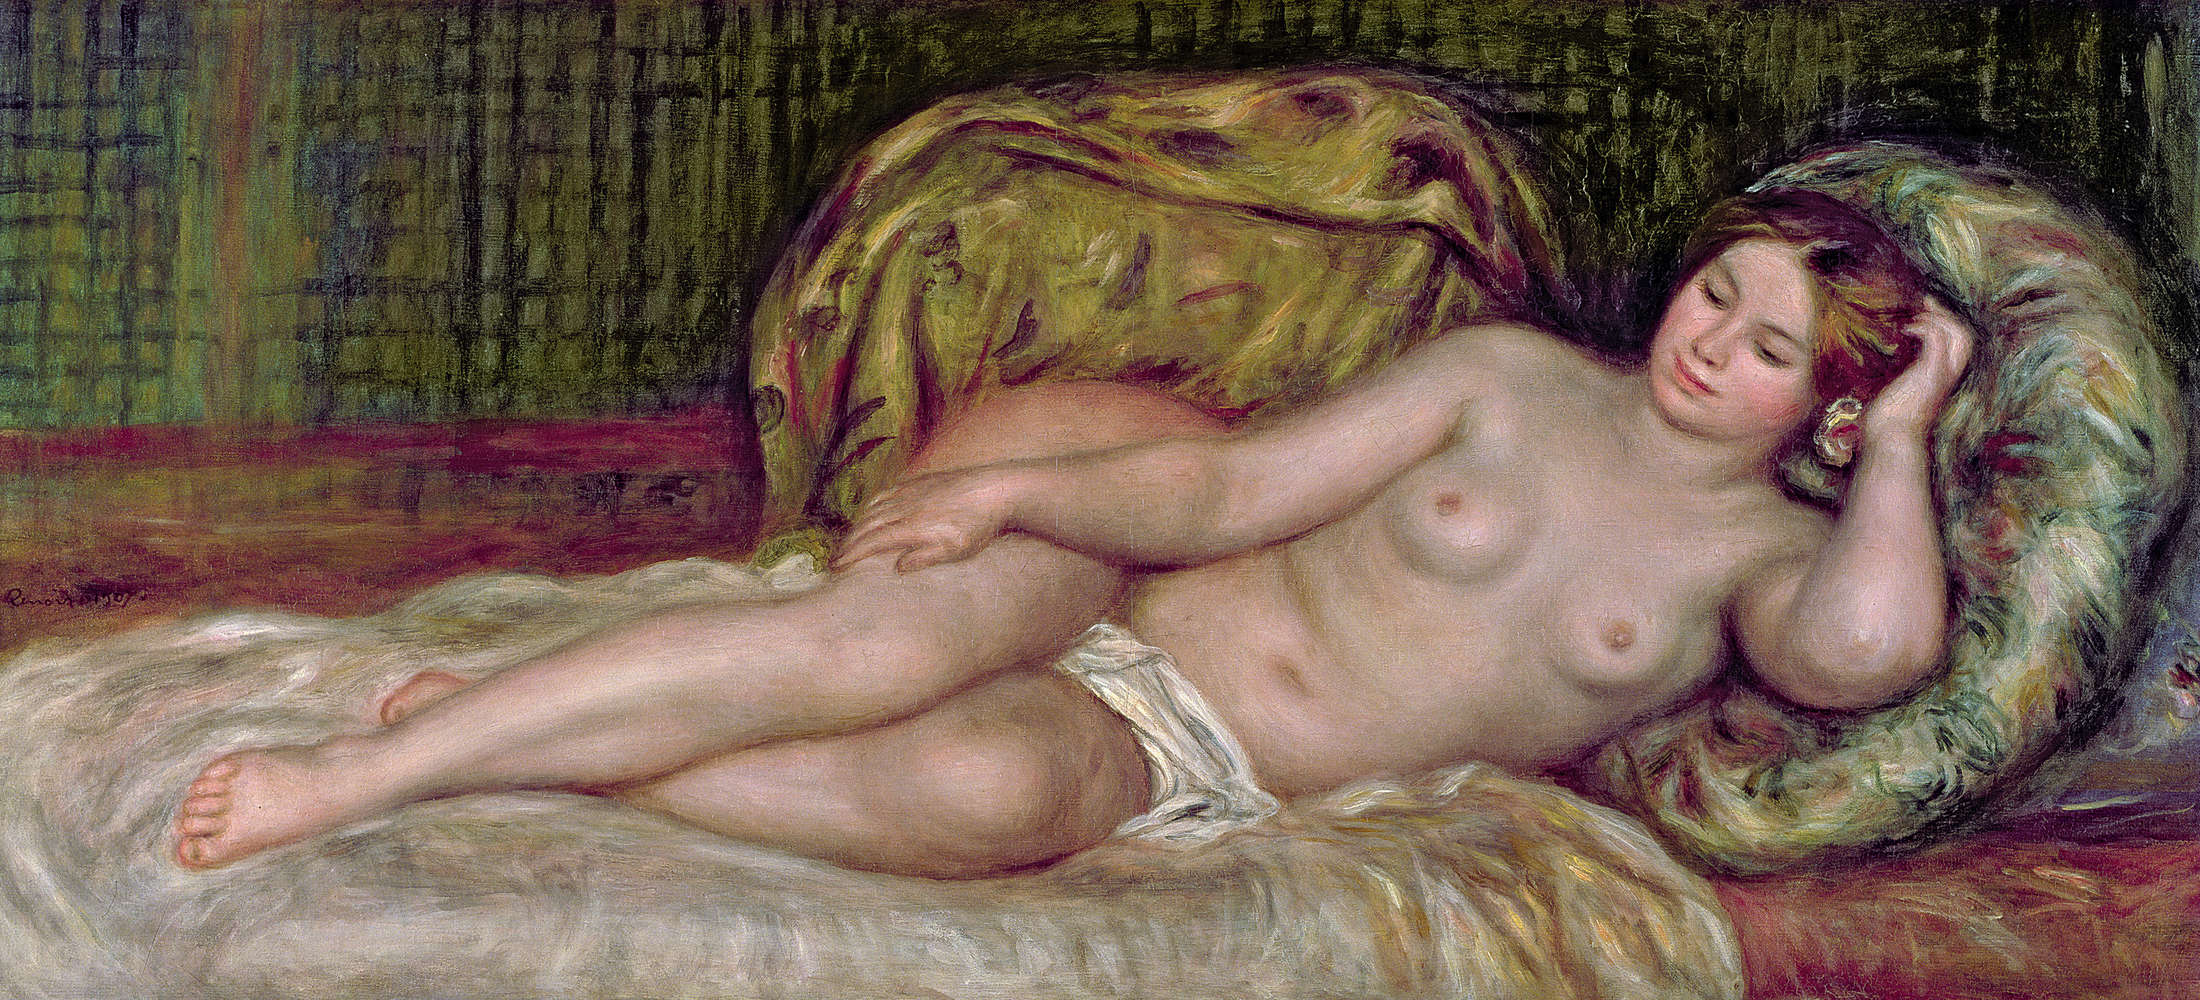             Mural "Desnudo" de Pierre Auguste Renoir
        